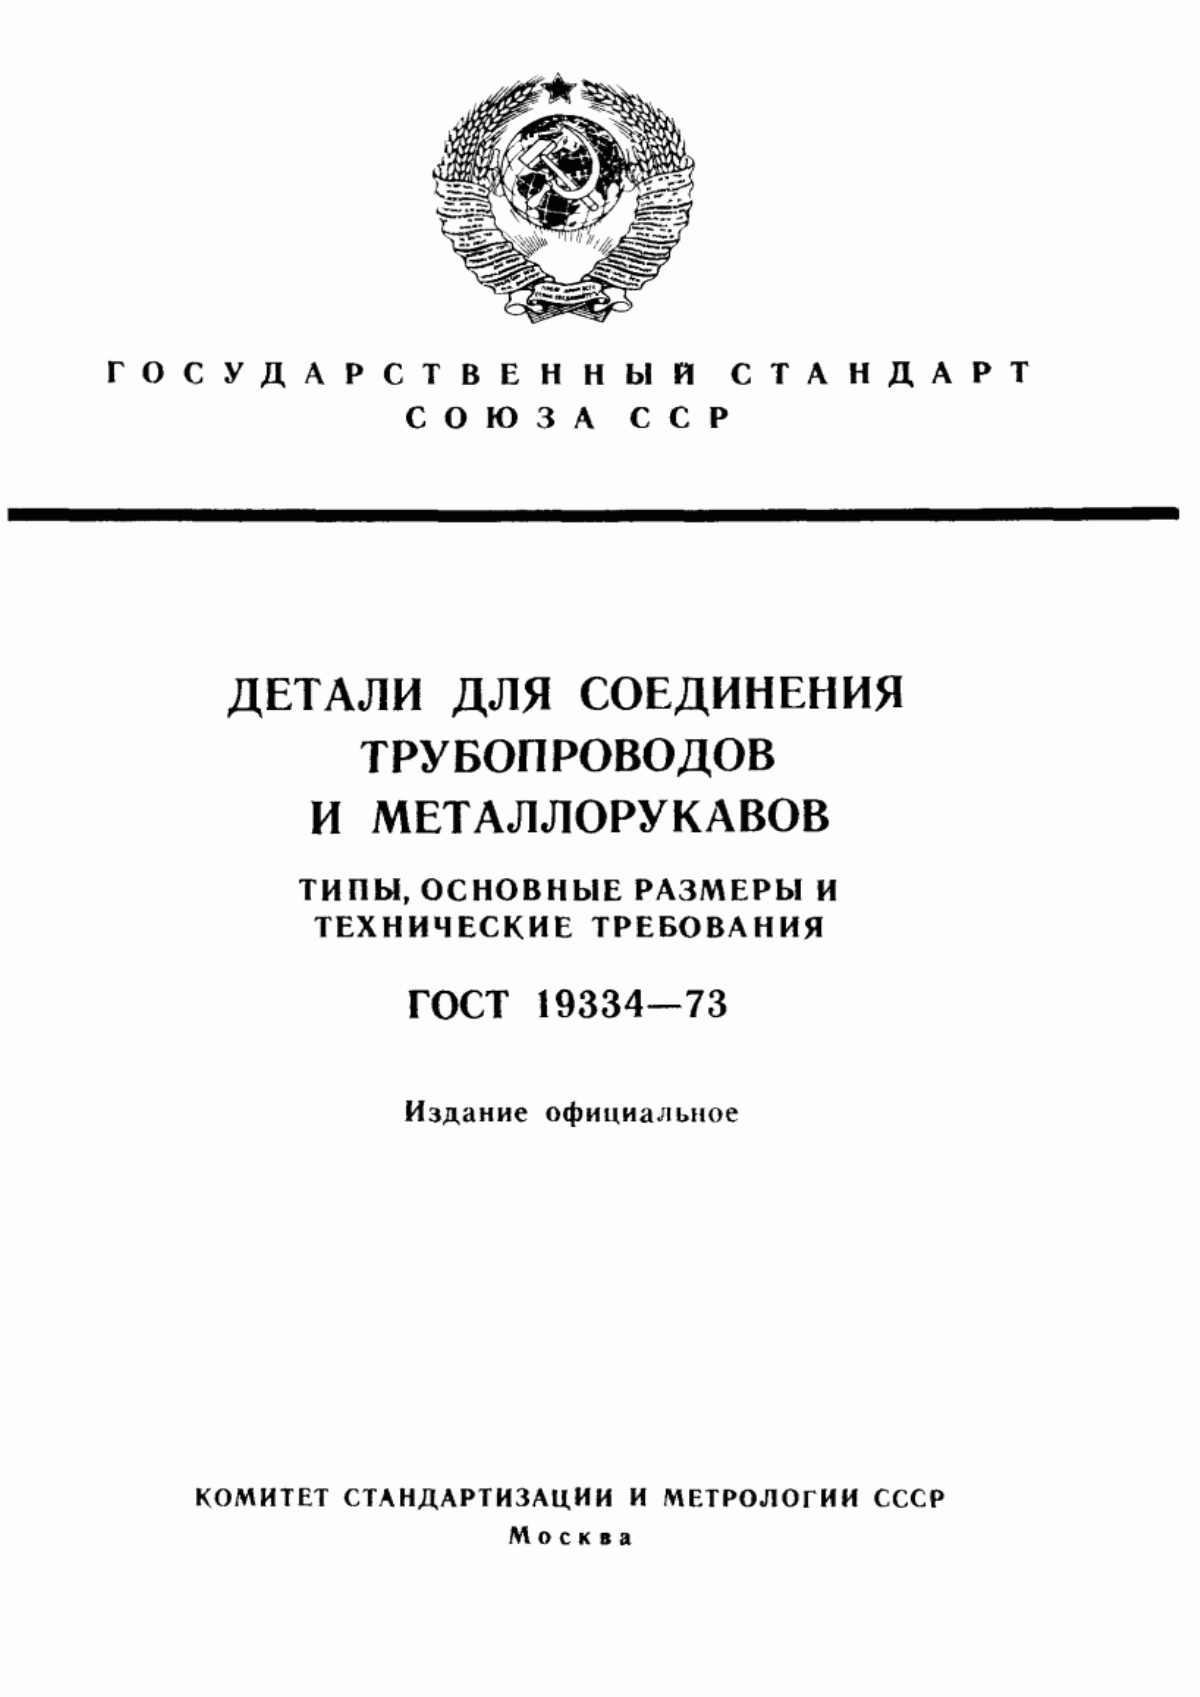 ГОСТ 19334-73 Детали для соединения трубопроводов и металлорукавов. Типы, основные размеры и технические требования